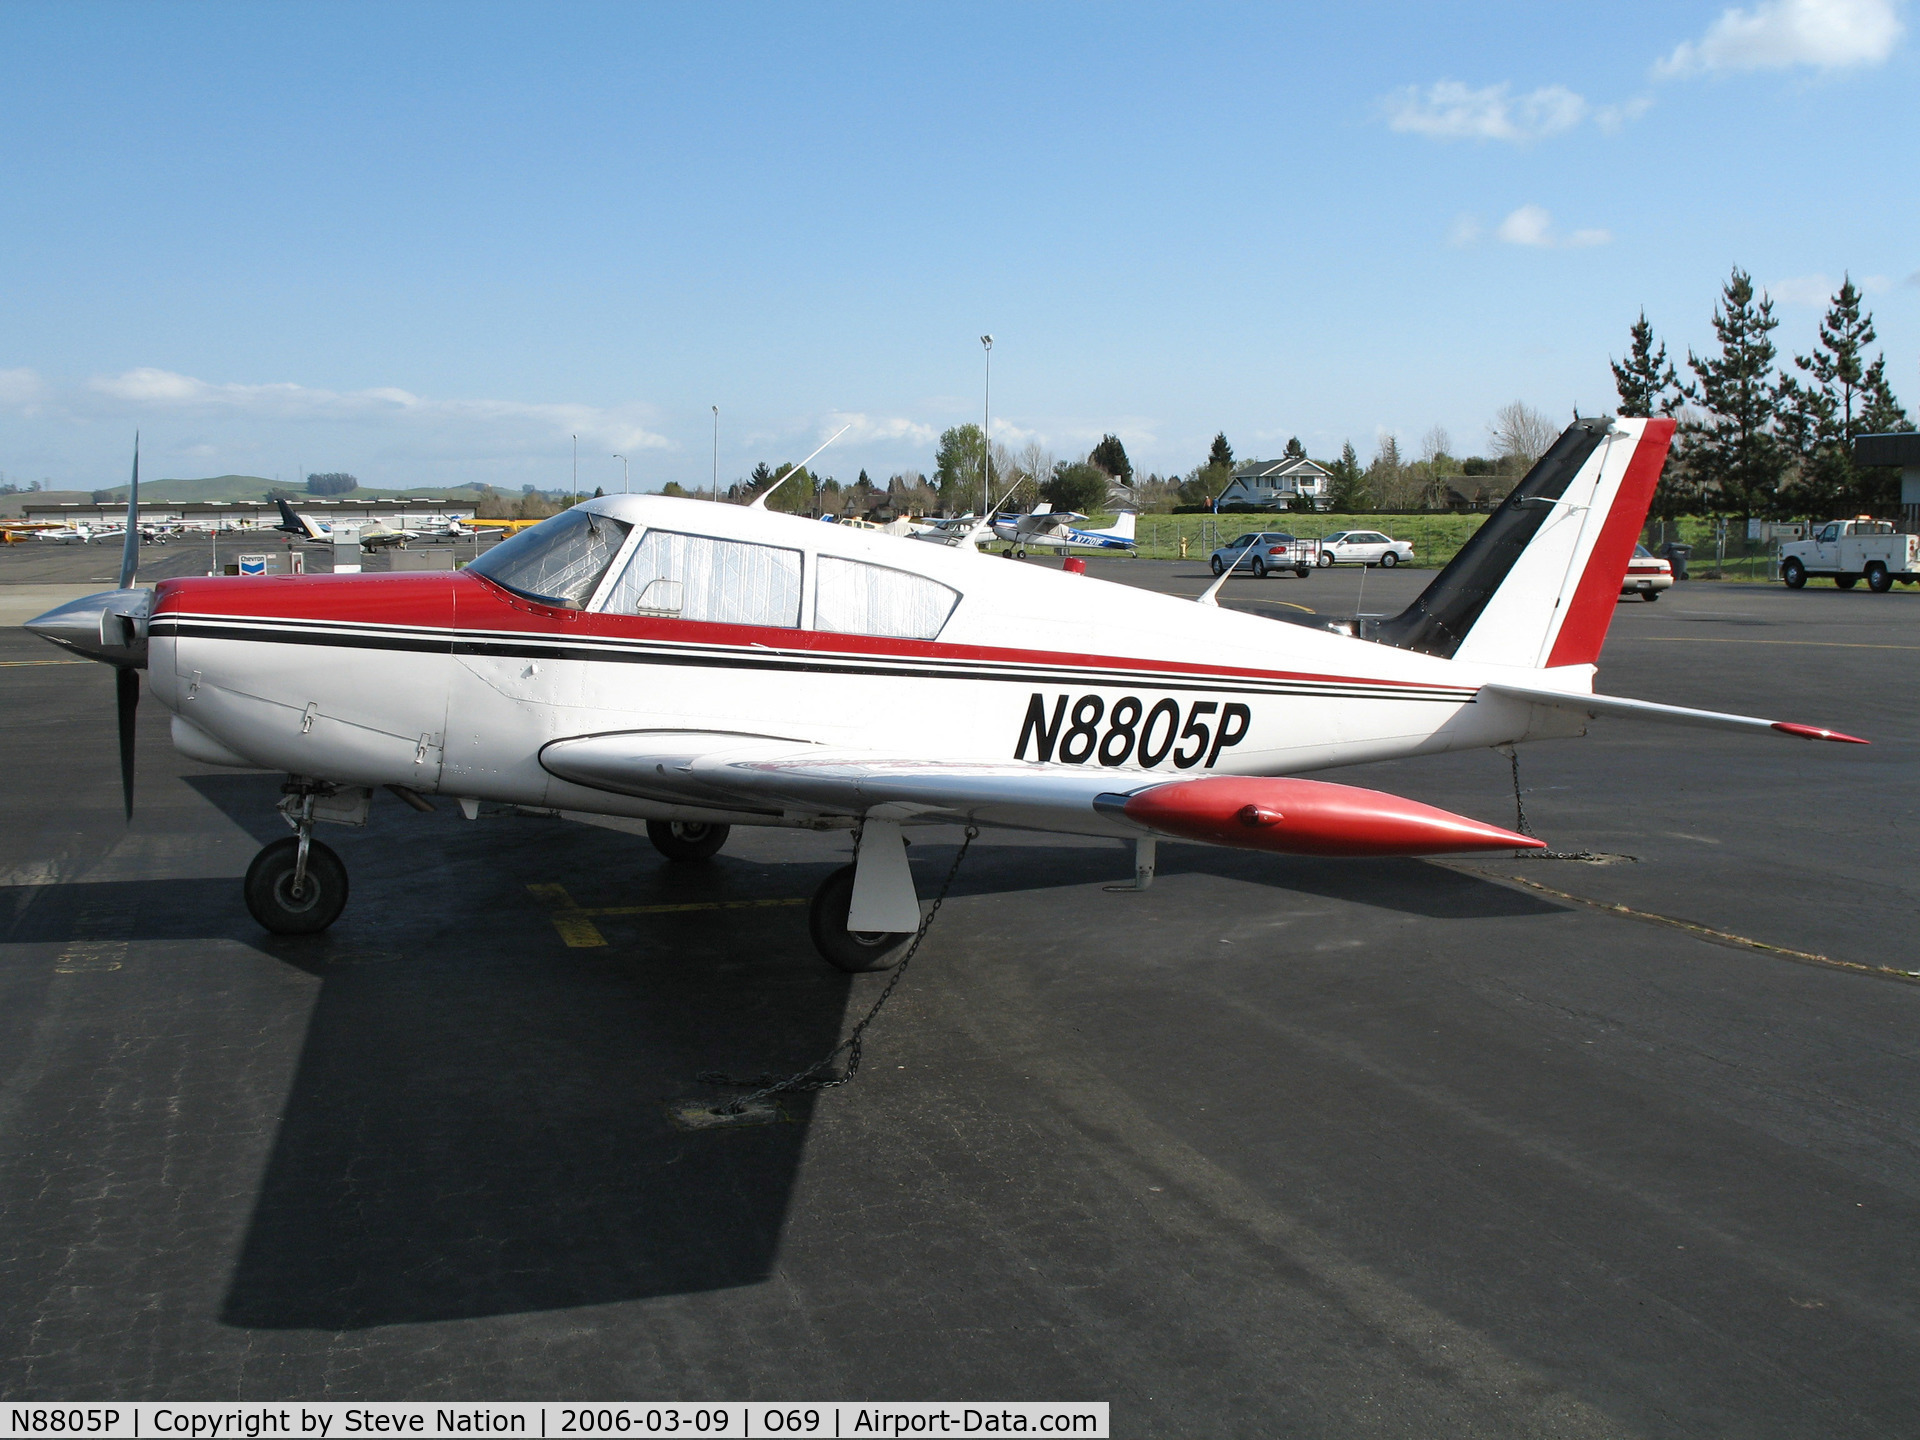 N8805P, 1965 Piper PA-24-260 C/N 24-4260, 1965 Piper PA-24-260 Comanche @ Petaluma, CA